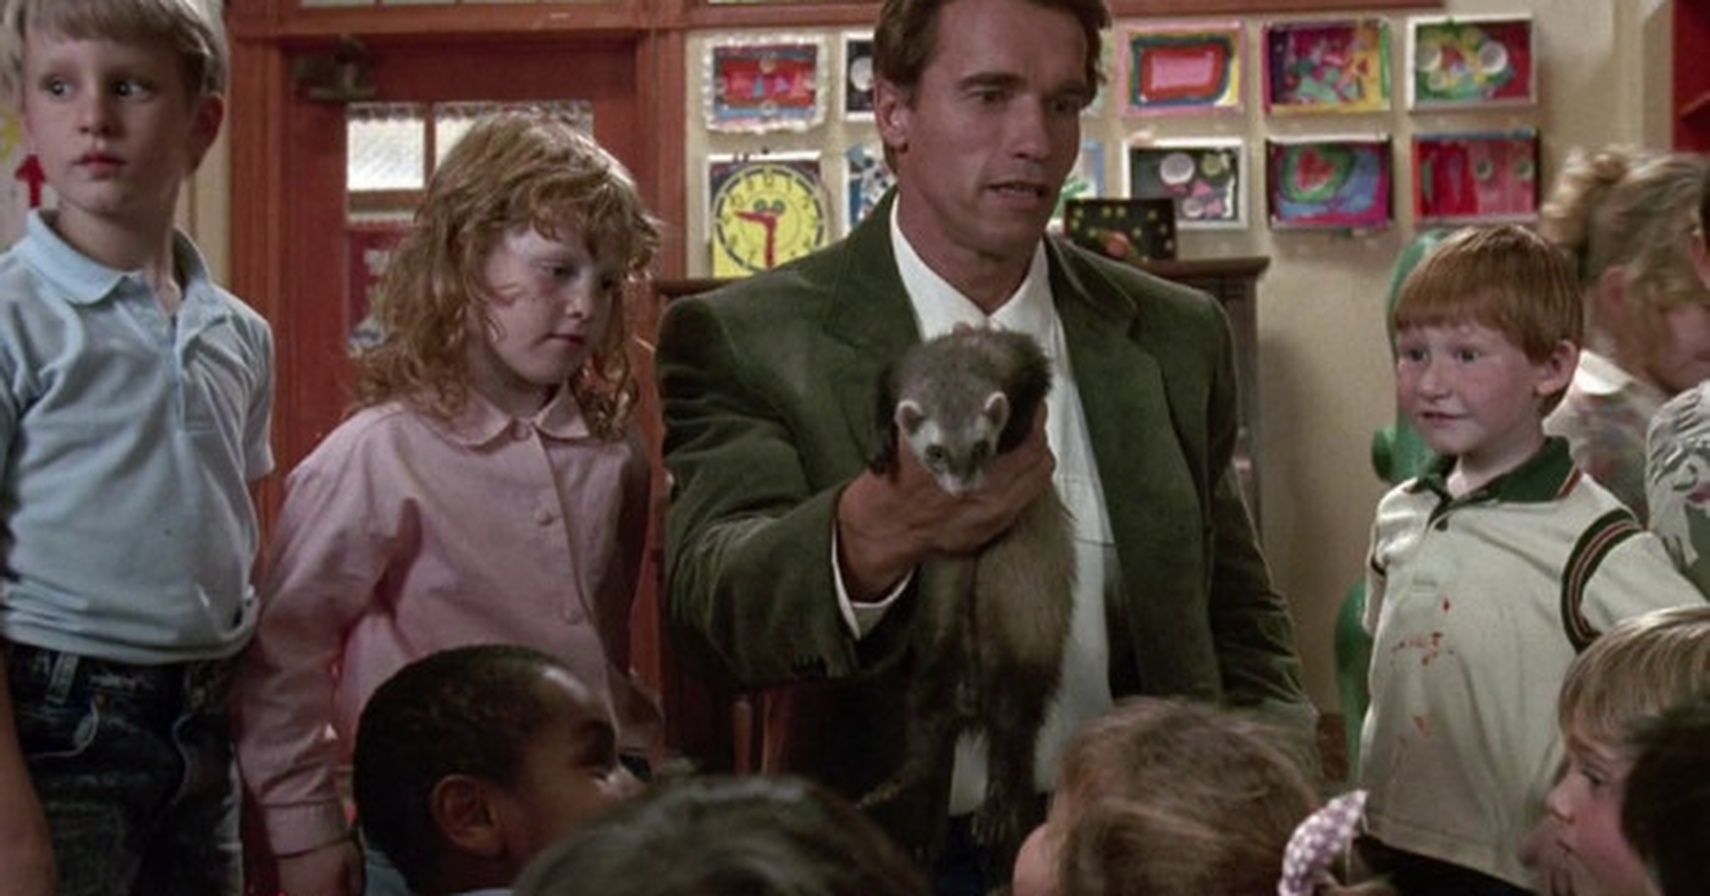 Arnold Schwarzenegger in Kindergarten Cop surrounded by children